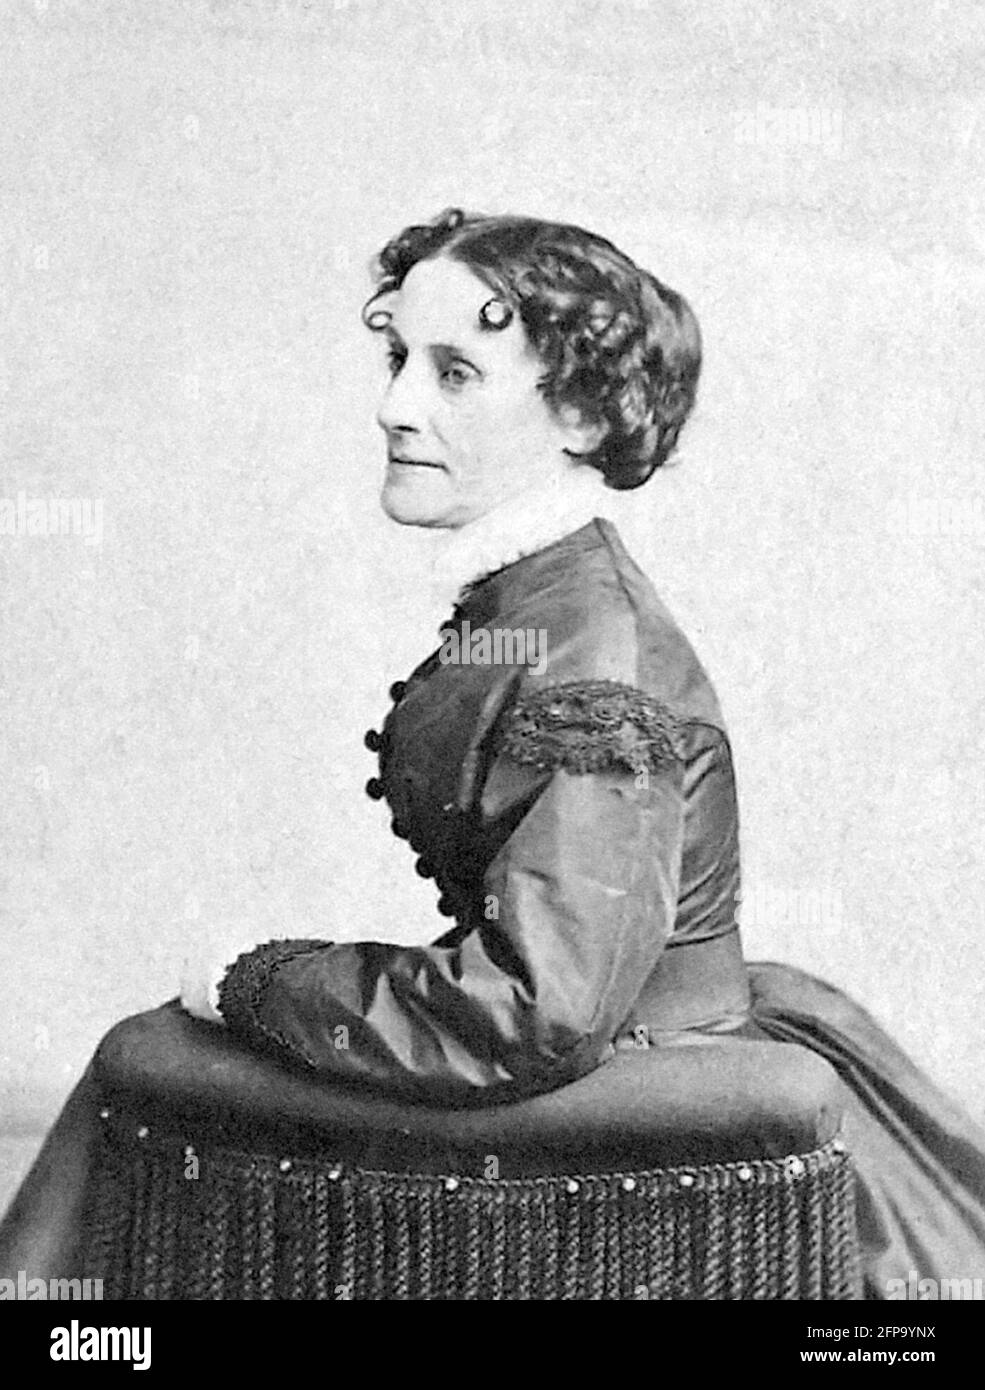 Elizabeth van Lew. Ritratto dell'abolizionista e spia americana, Elizabeth Van Lew (1818-1900) Foto Stock